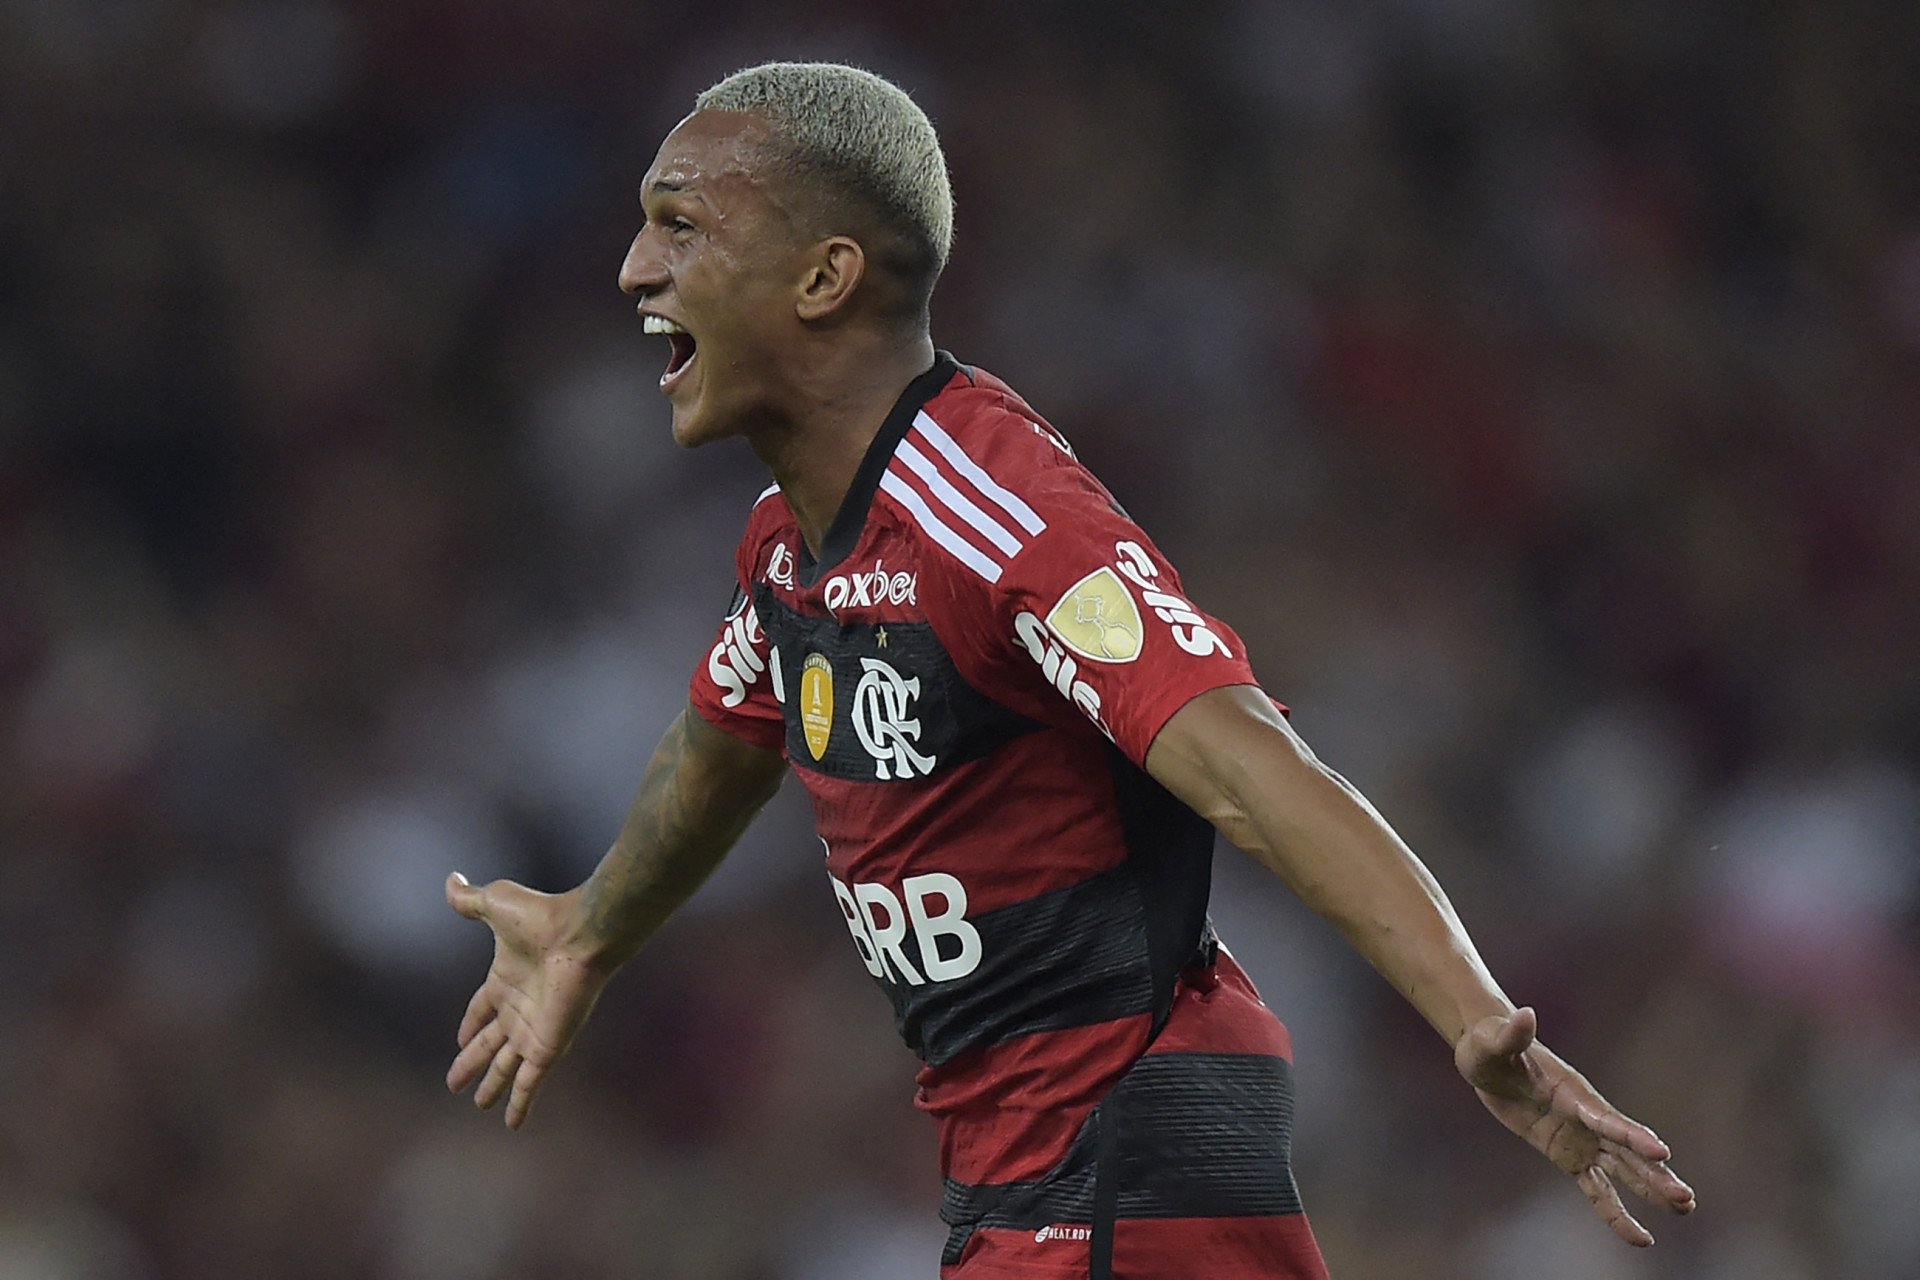 Na mira do Barcelona, Wesley é selecionado pelo Flamengo em pré-lista para  o Mundial de Clubes - Coluna do Fla